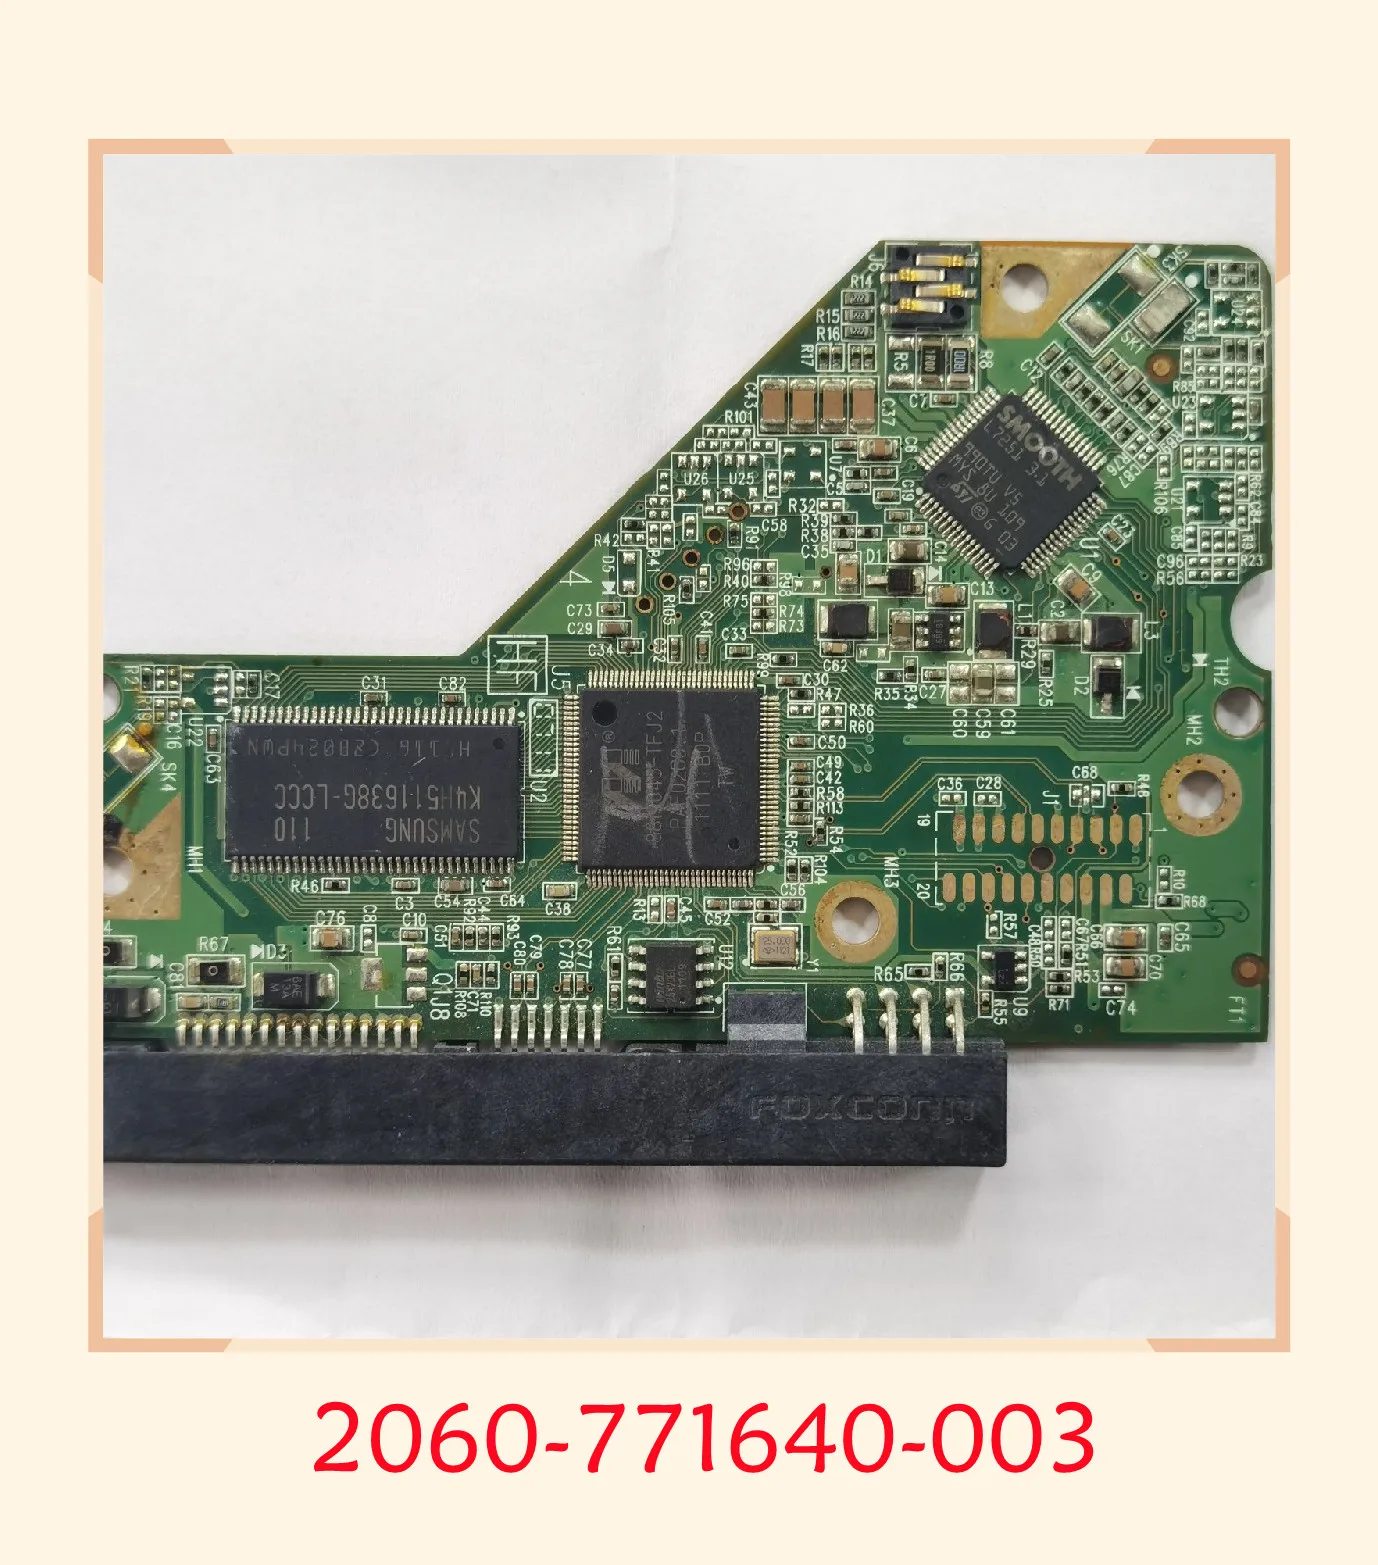 

Оригинальная тестовая печатная плата GZ855 2060-771640-003 REV A/P1 для WD 3,5 SATA, восстановление данных жесткого диска